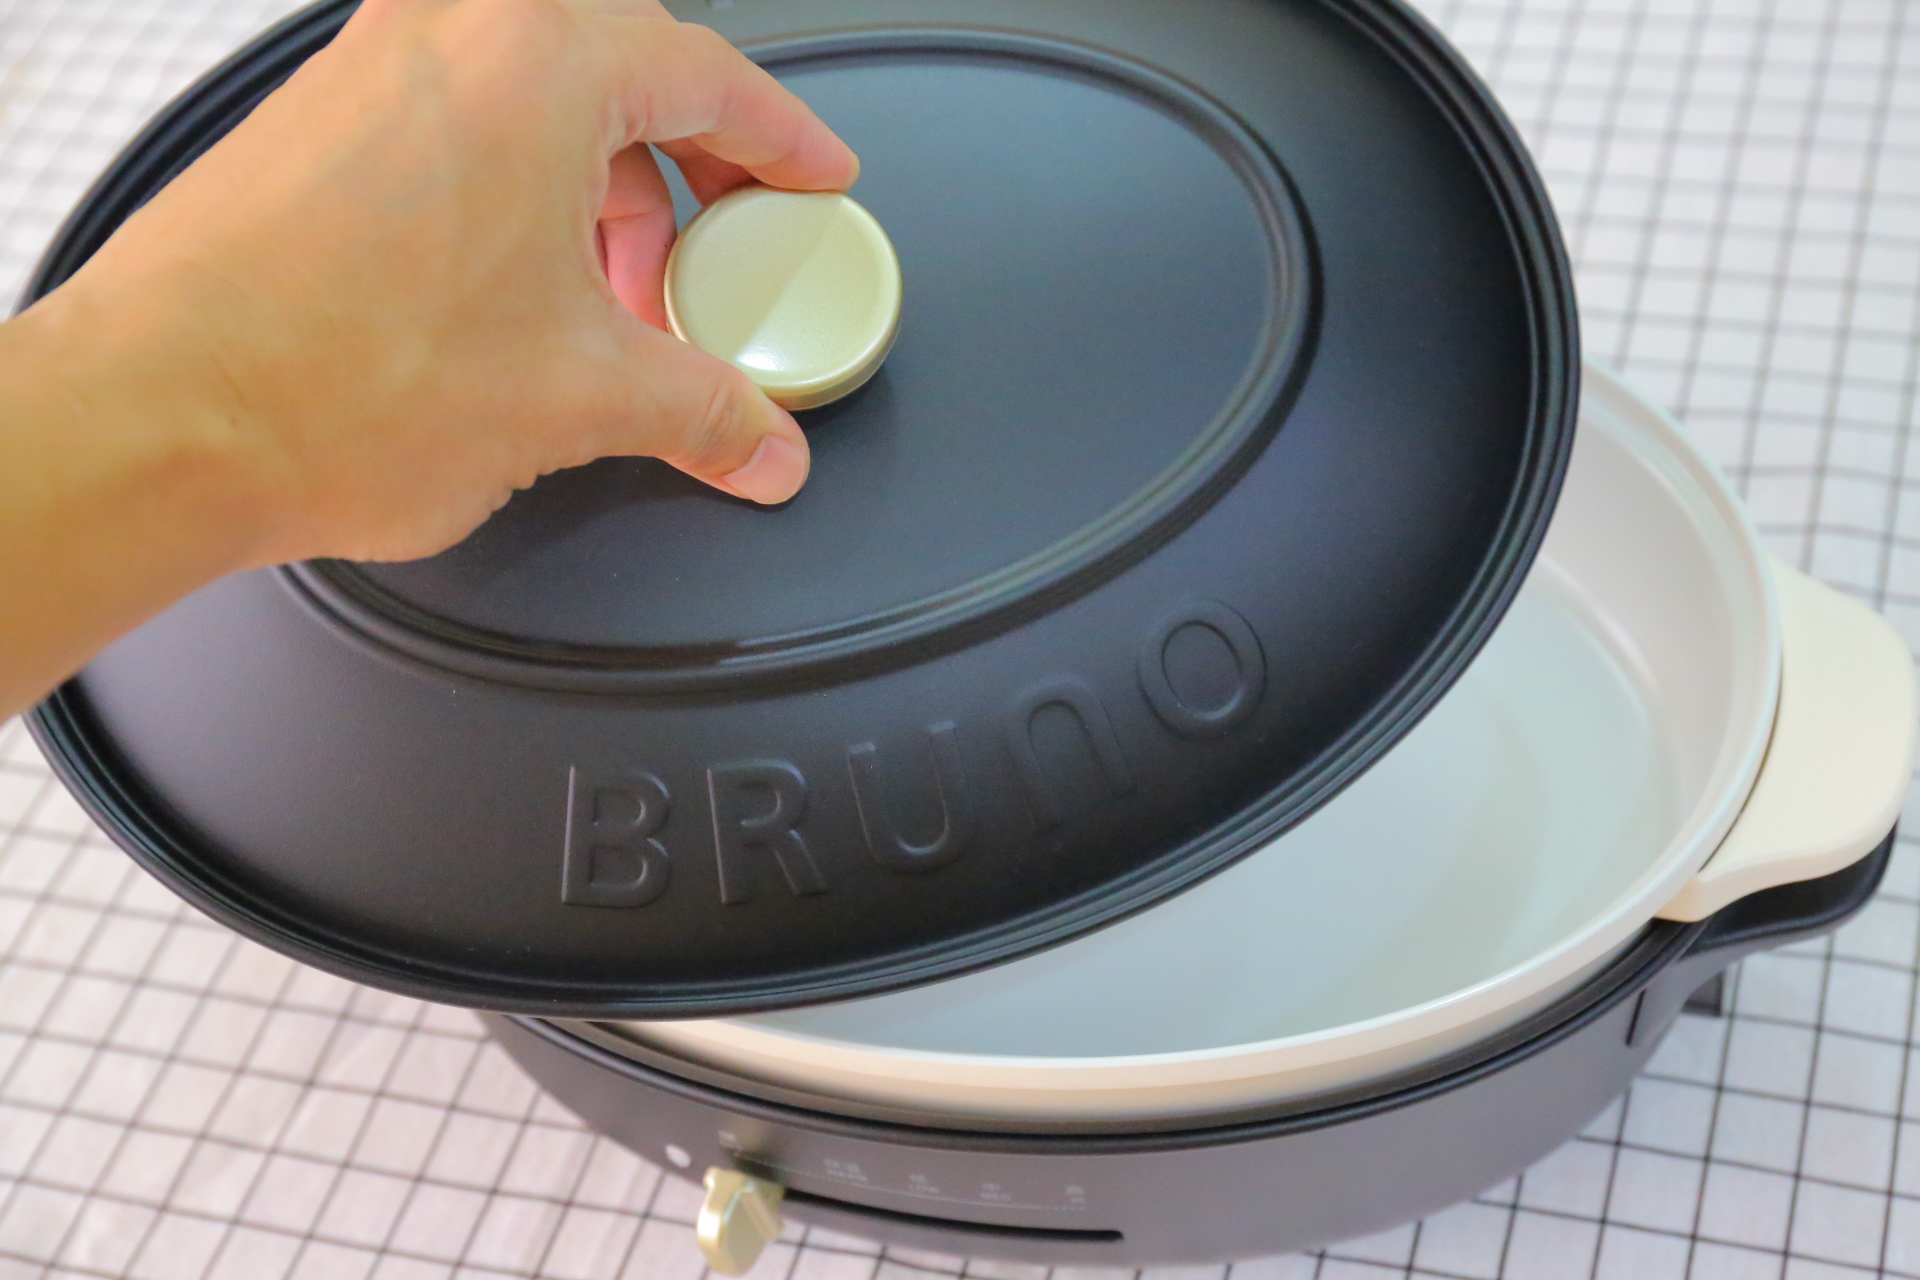 【Bruno橢圓電烤盤團購】最新最夯的電烤盤缺貨剛到!你們想要搶就要比手快了! @小環妞 幸福足跡